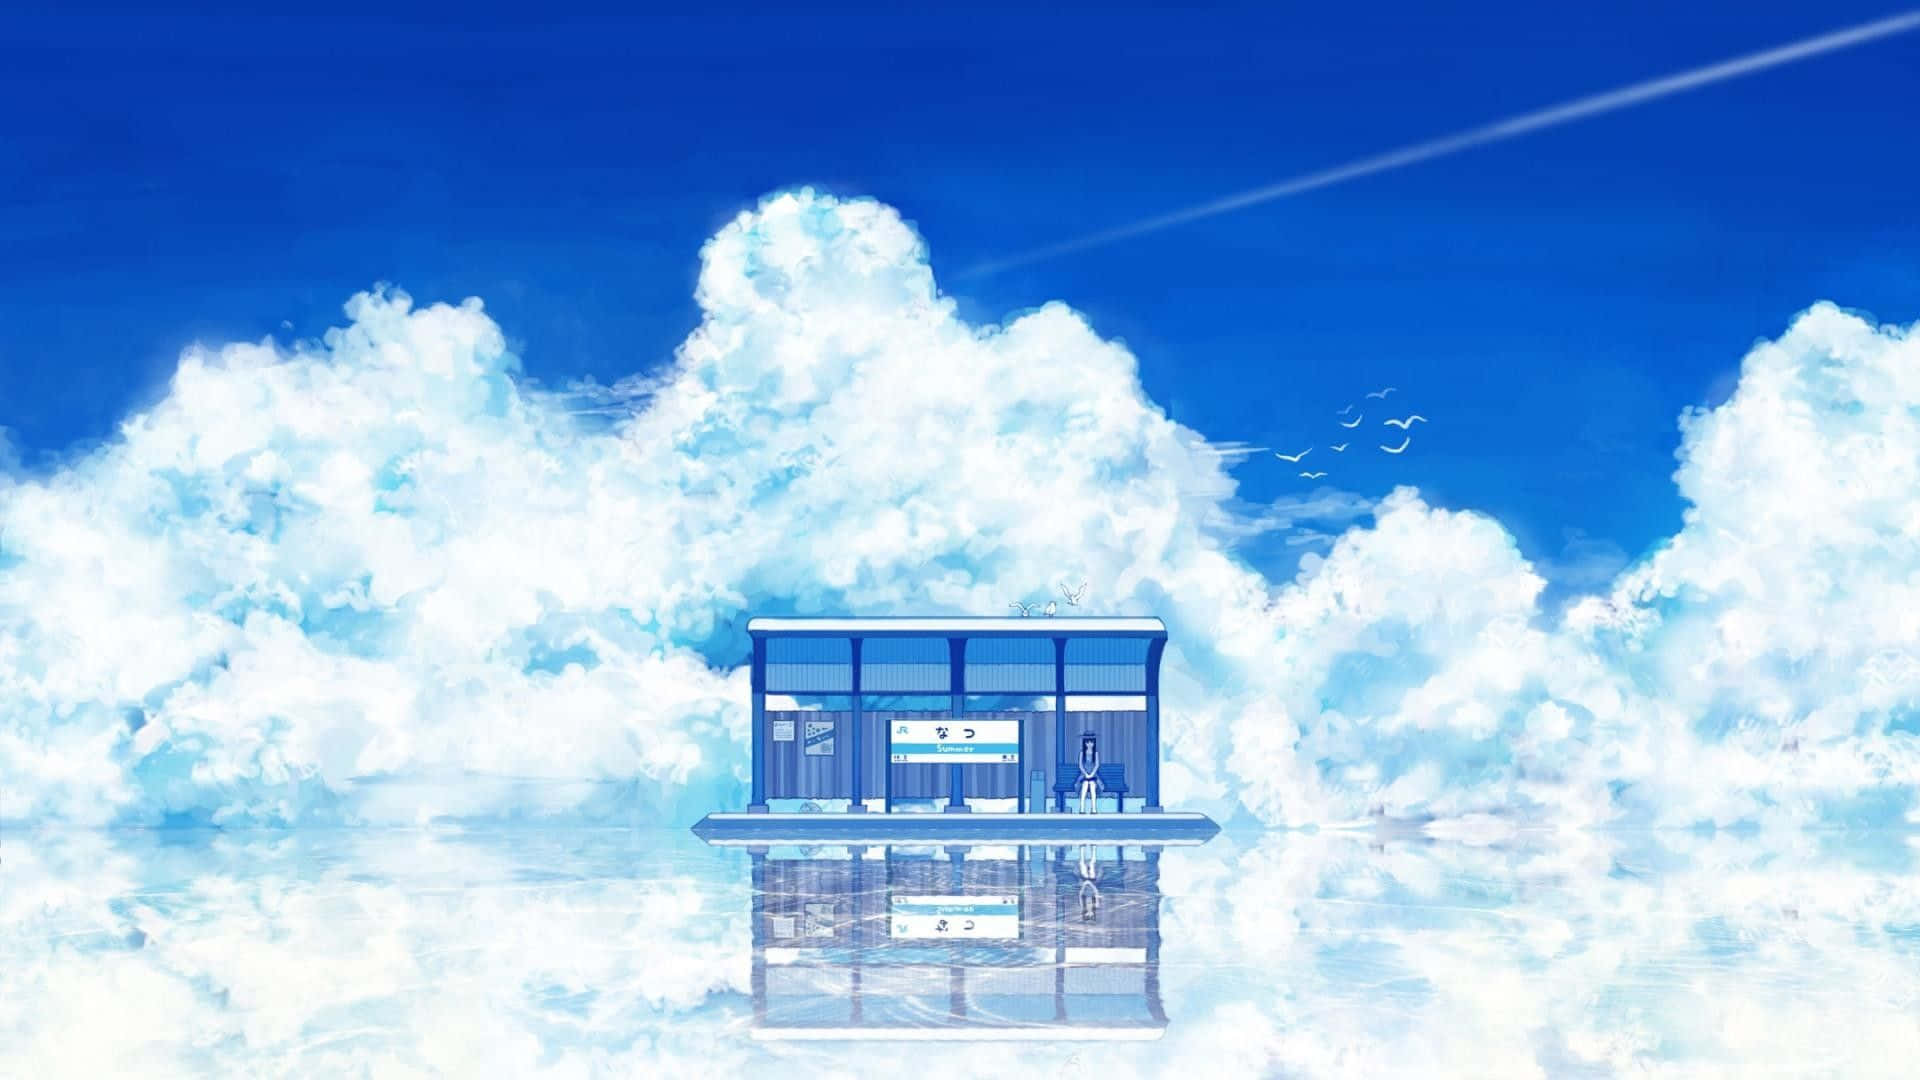 Tiendade Fondos De Pantalla De Anime Azul Flotando En Las Nubes